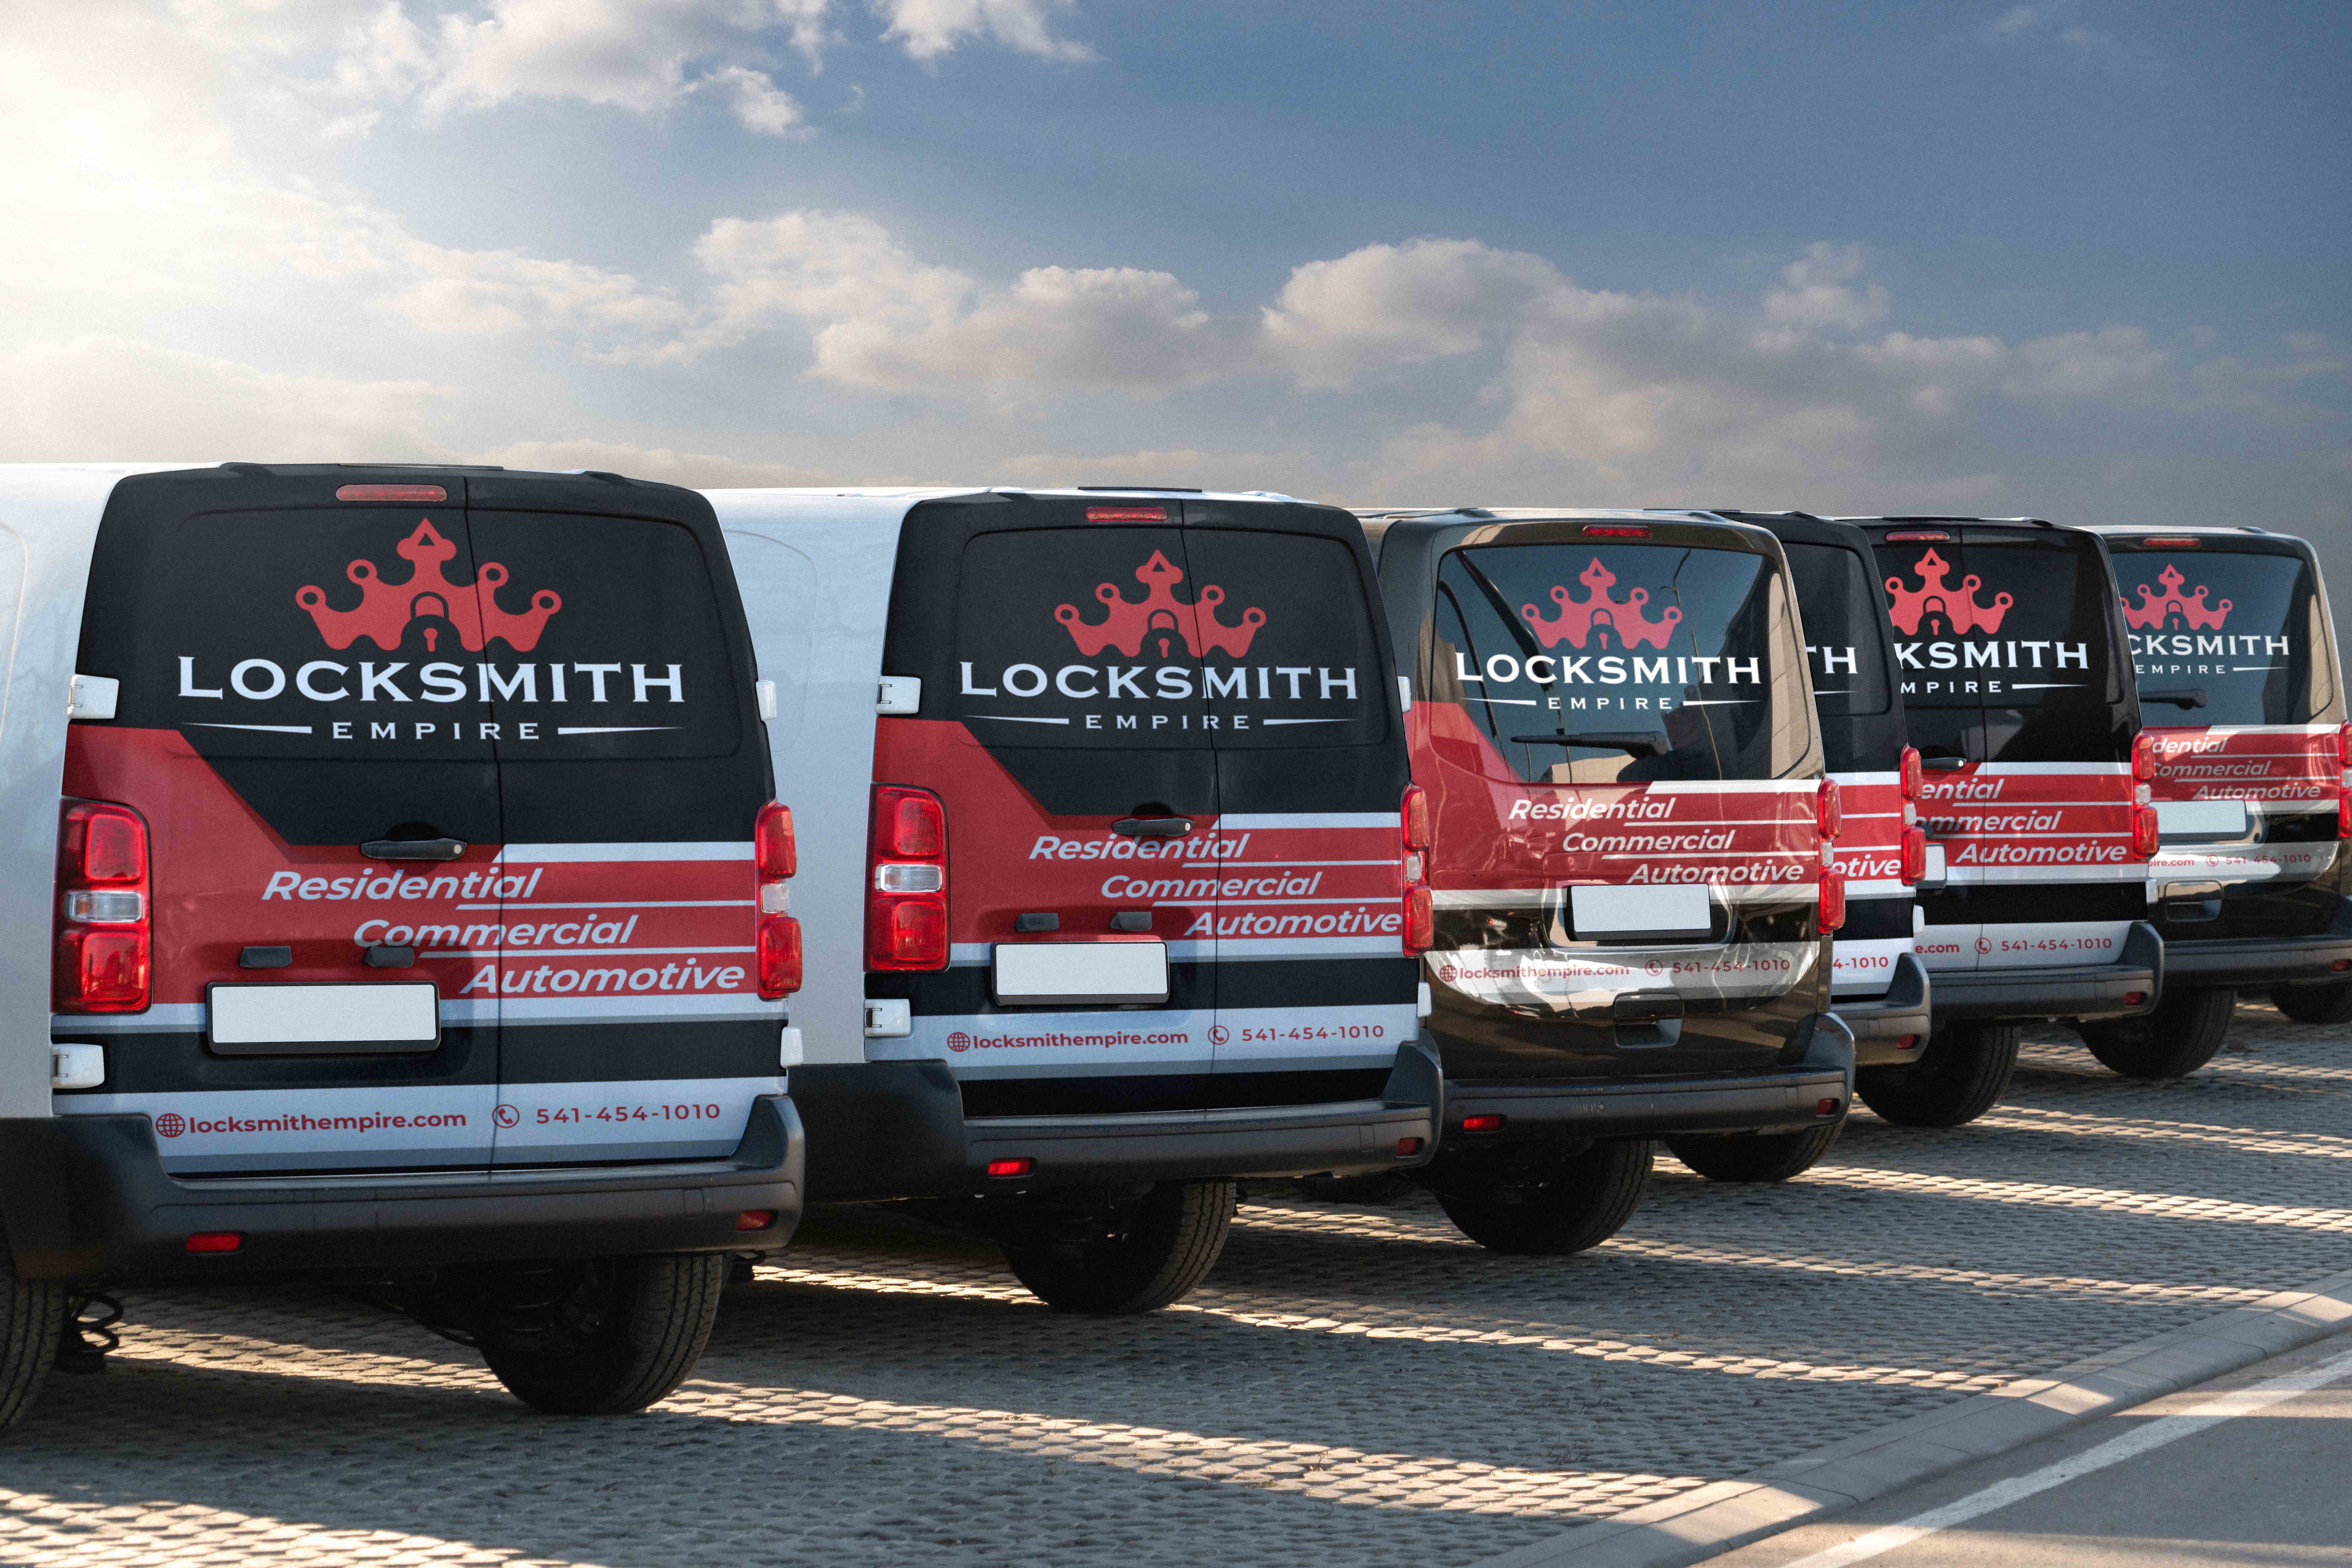 Locksmith empire company vans